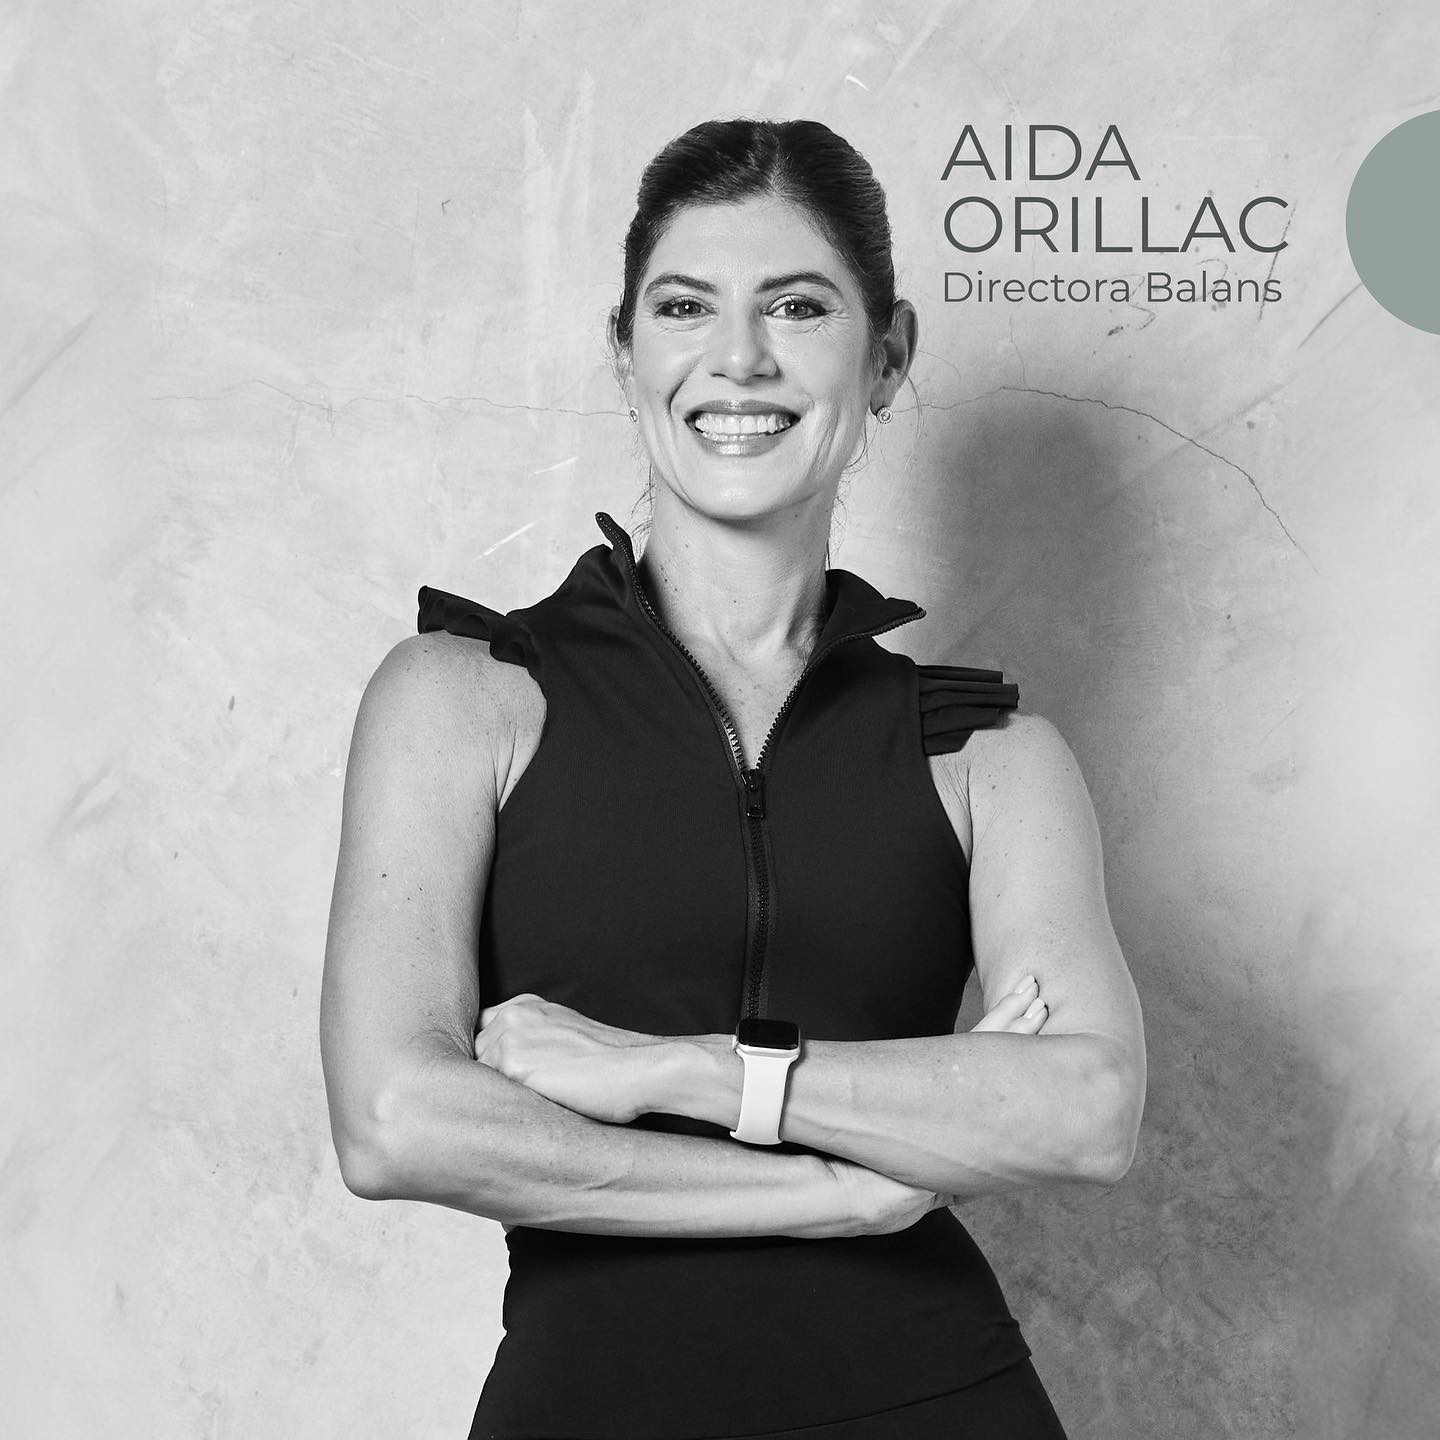 Aida Orillac